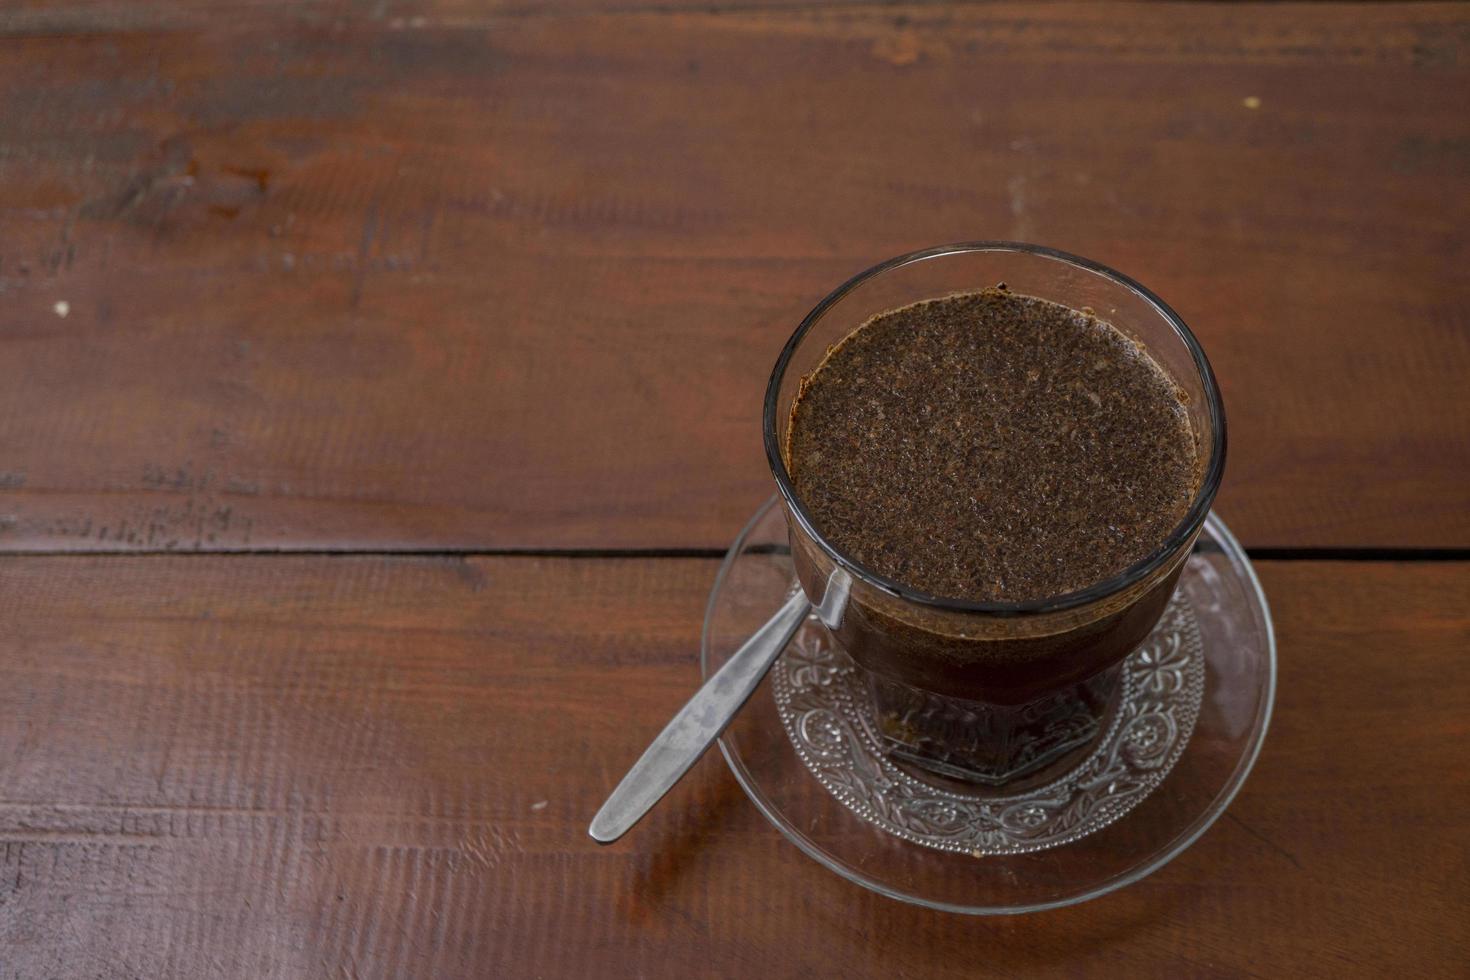 stänga upp Foto en kopp av arabica kaffe med sked från hög vinkel. de Foto är lämplig till använda sig av för kaffe affär bakgrund, meny affisch och kaffe innehåll media.